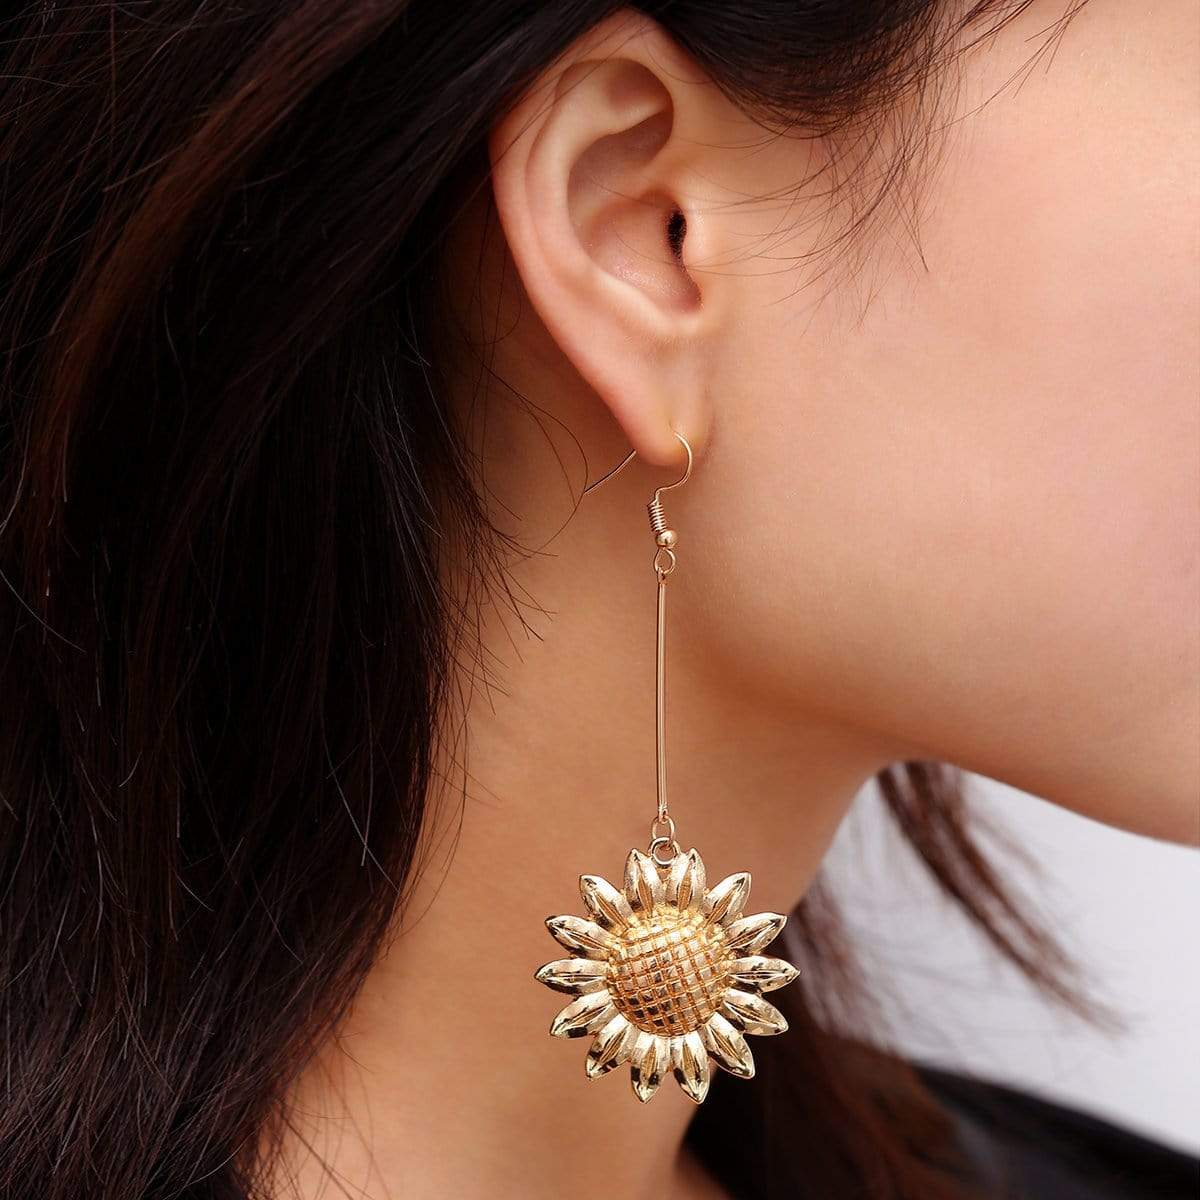 Golden Sunflower Earrings - Feminine Charm Earrings - Flower Dangle Earrings - ArtGalleryZen